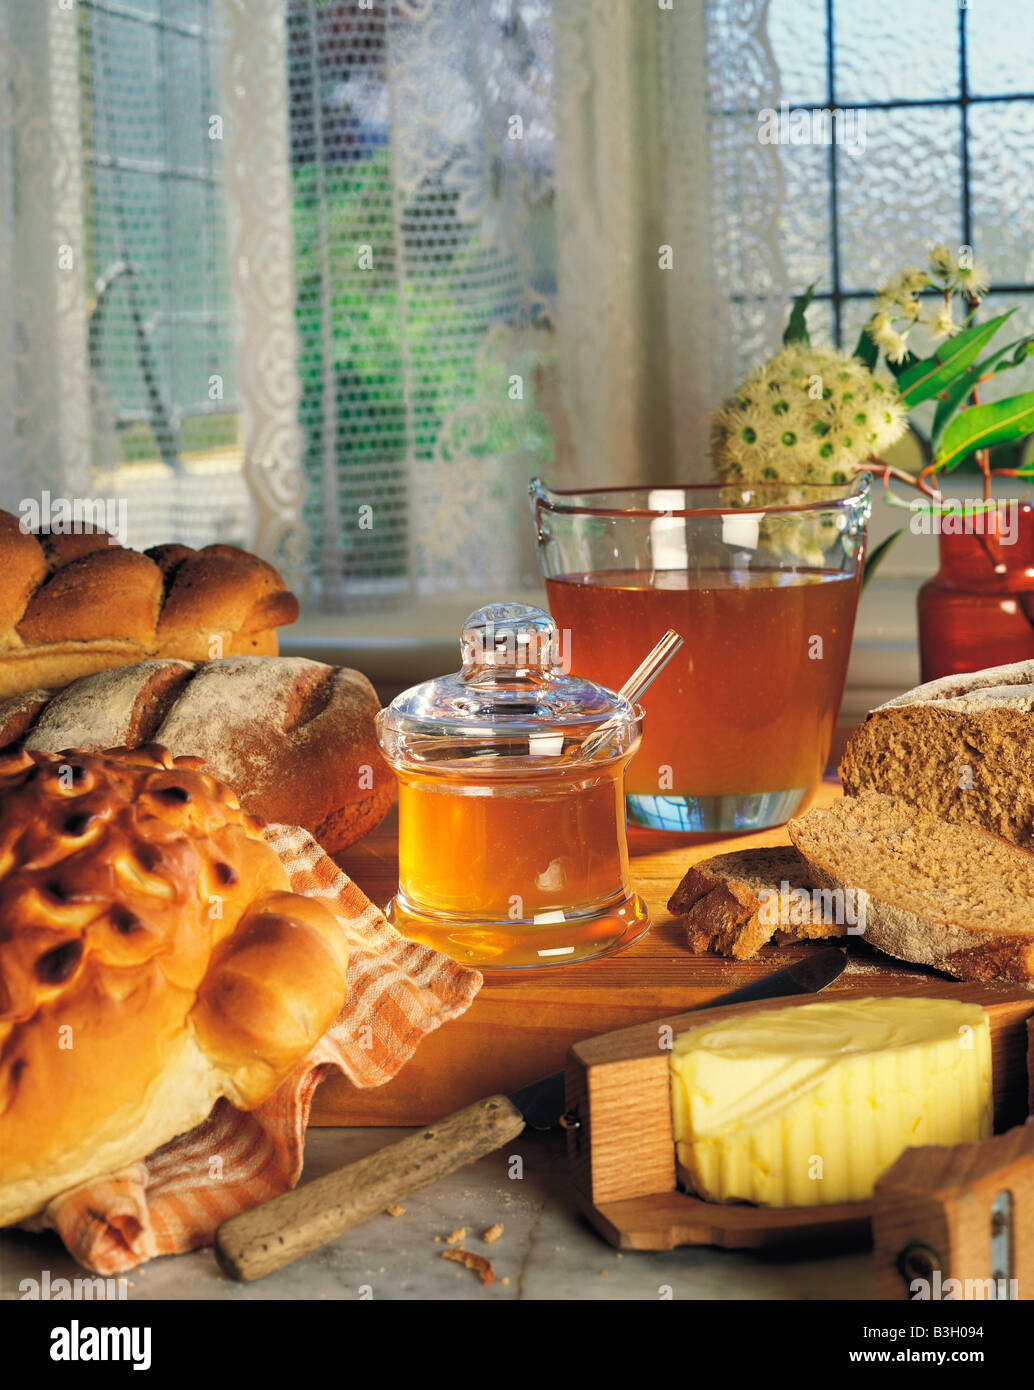 Stillleben mit Honig Glas mit frischem Brot und Butter auf Küchentisch Fenster. Stockfoto